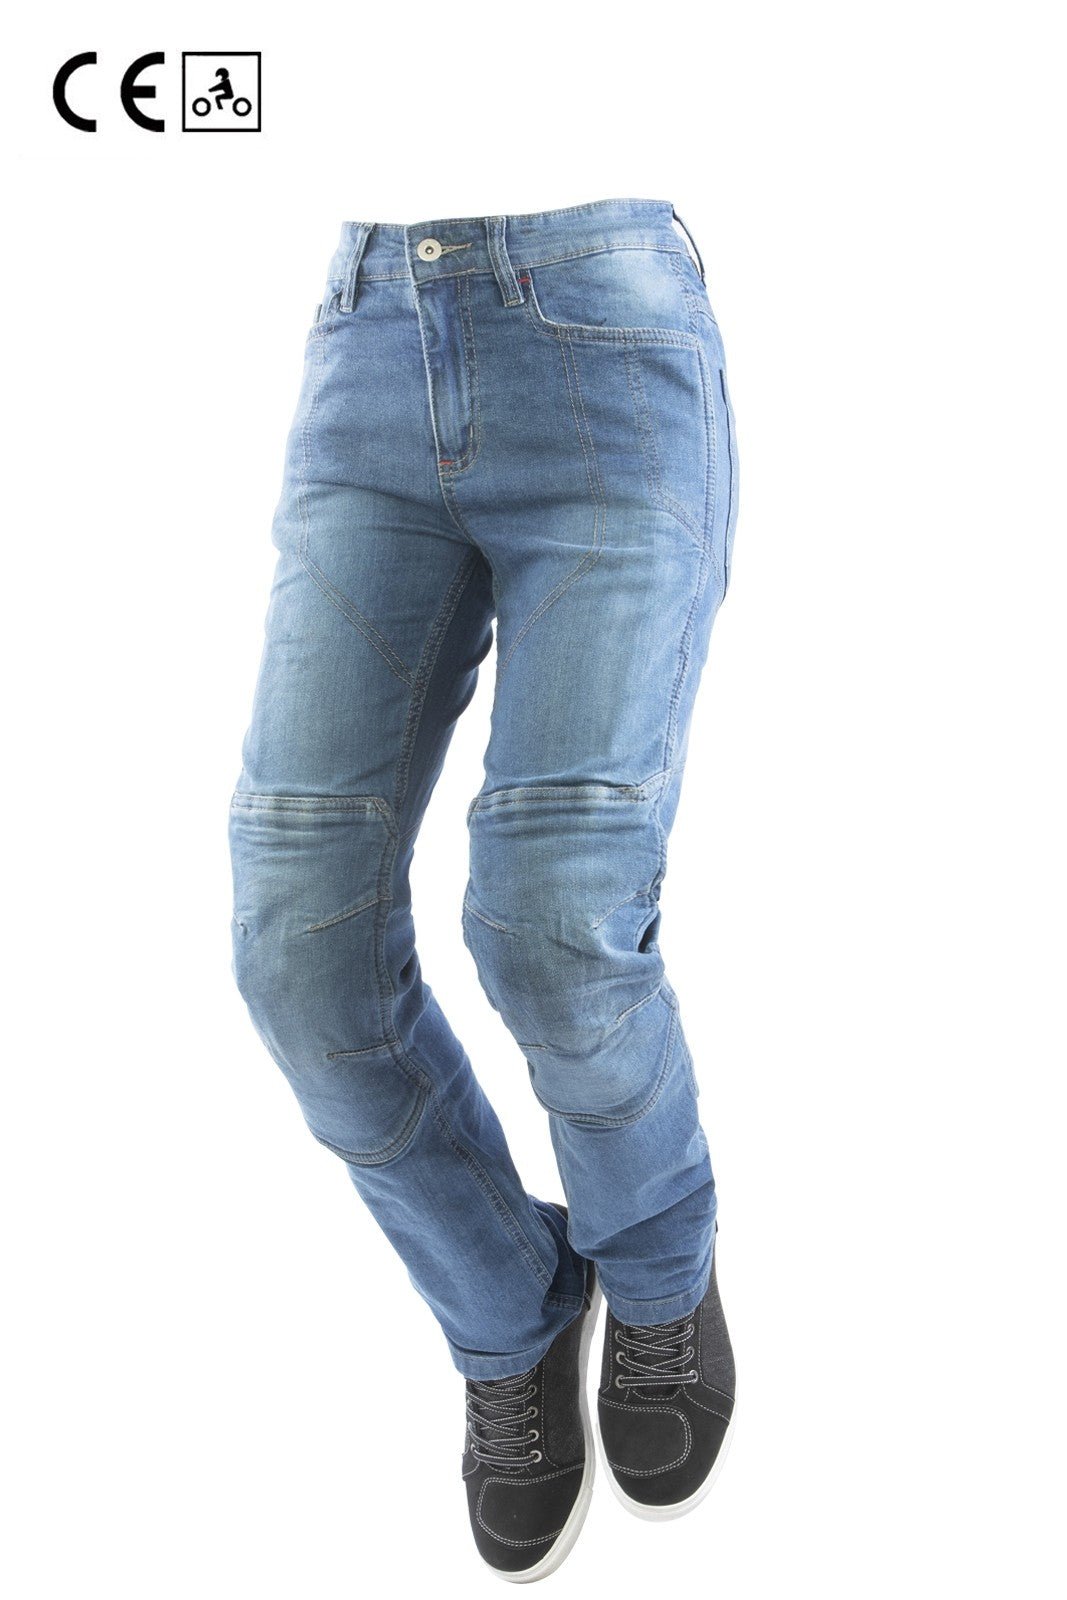 Jeans moto OJ DEFENDER LADY donna, elasticizzato, aramide, protezioni rimovibili - OnTheRoad.shop - OJ